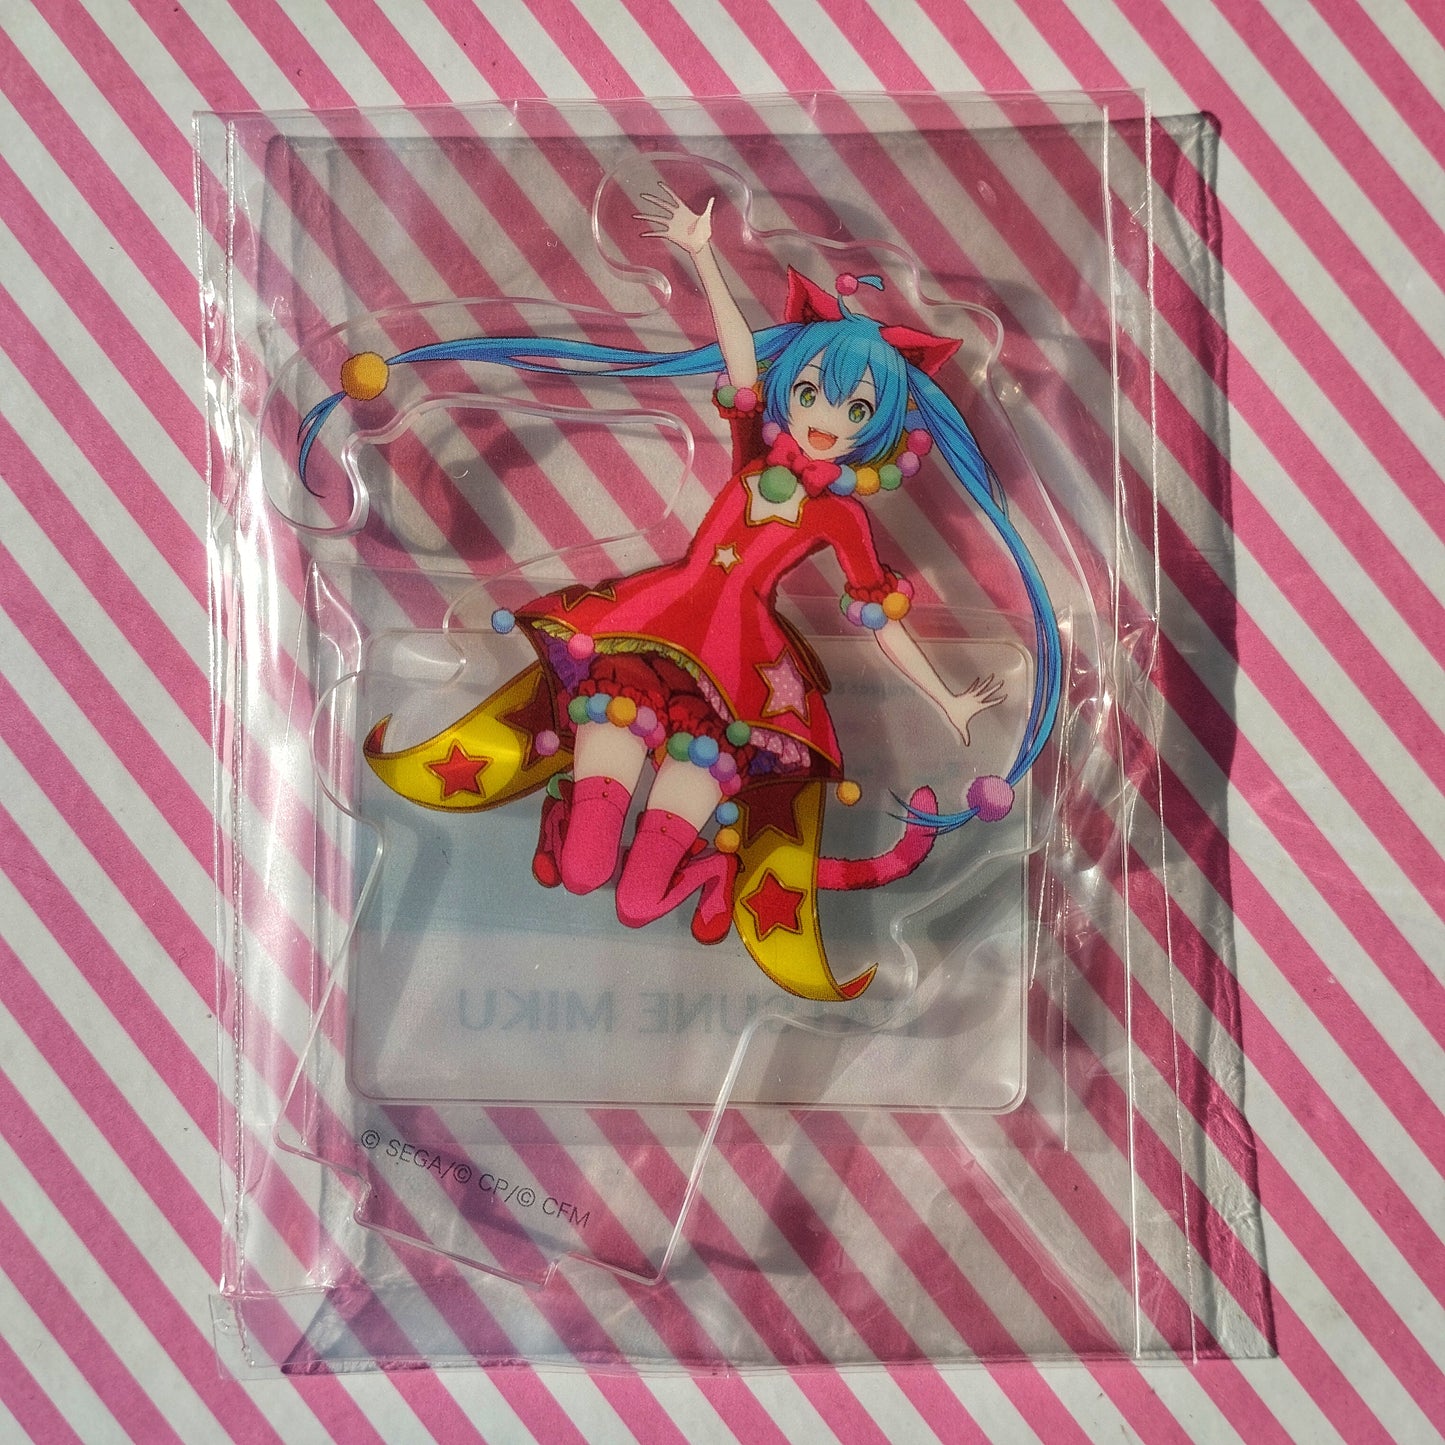 Hatsune Miku Mini support acrylique - Scène colorée du projet Sekai ! pi. Hatsune Miku